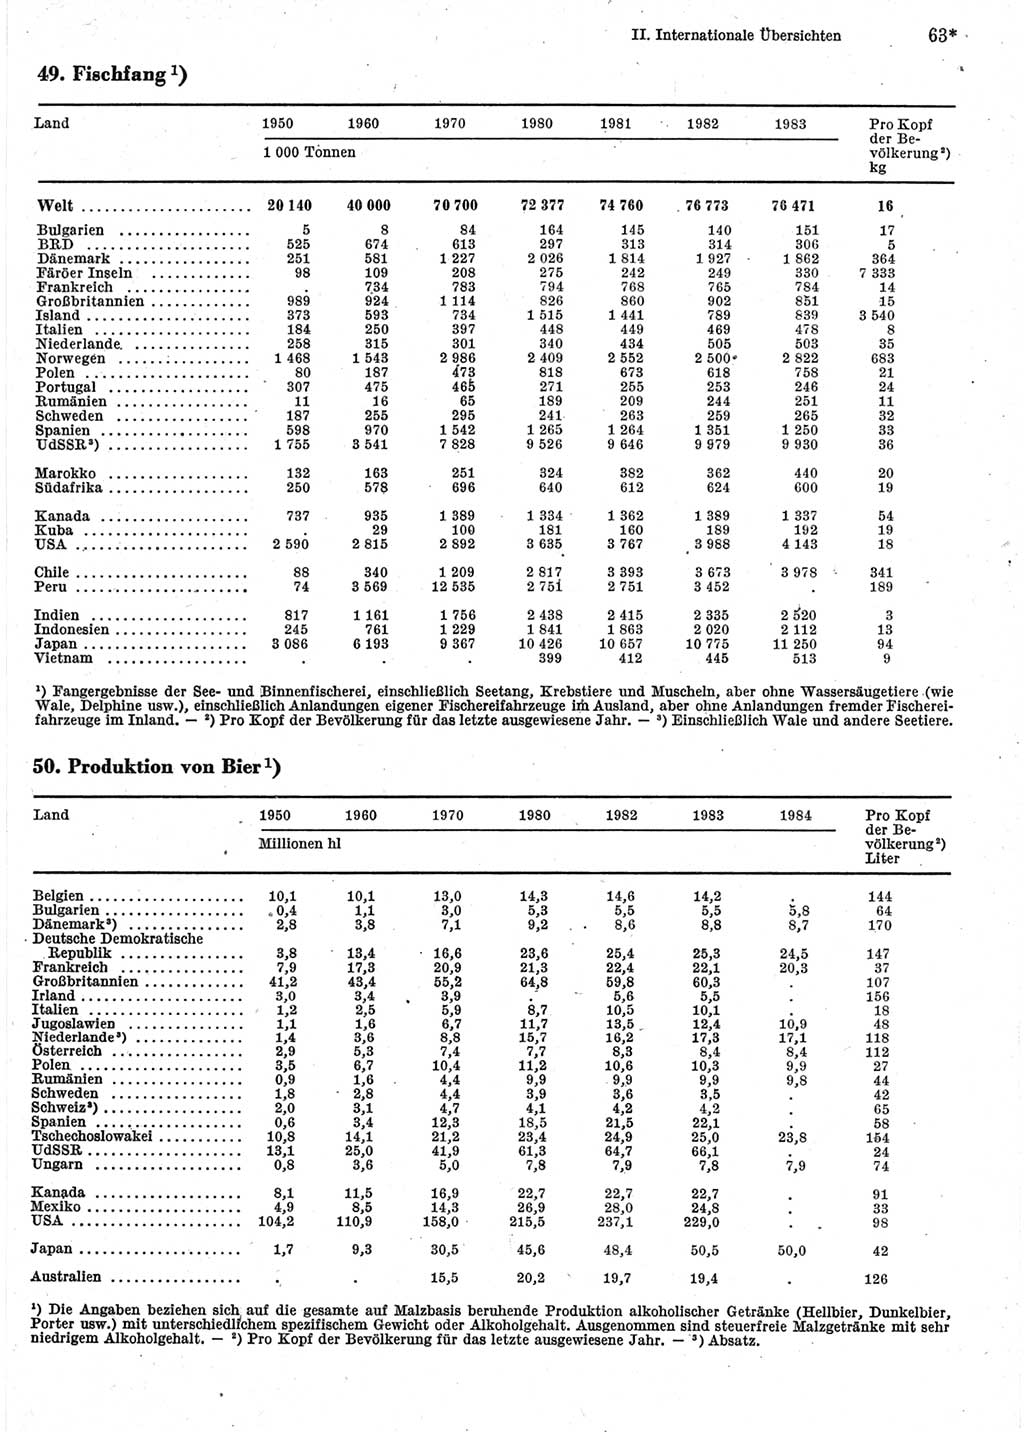 Statistisches Jahrbuch der Deutschen Demokratischen Republik (DDR) 1986, Seite 63 (Stat. Jb. DDR 1986, S. 63)